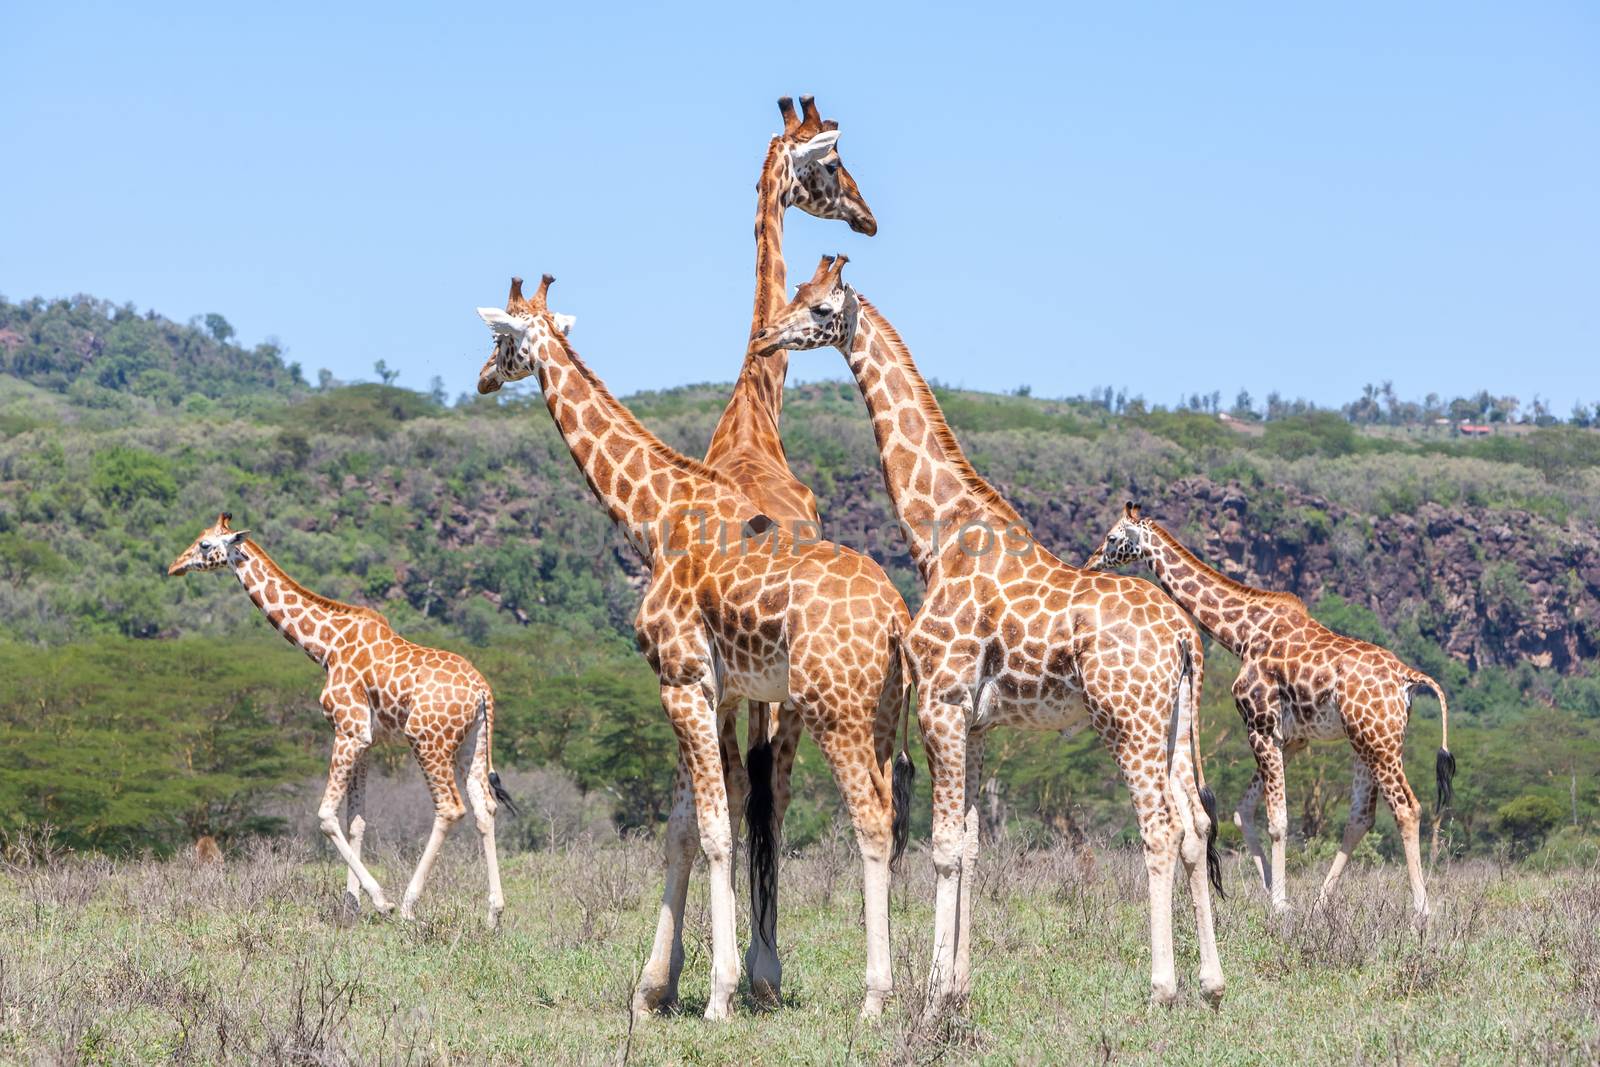 Wild giraffes herd in savannah, Kenya, Africa